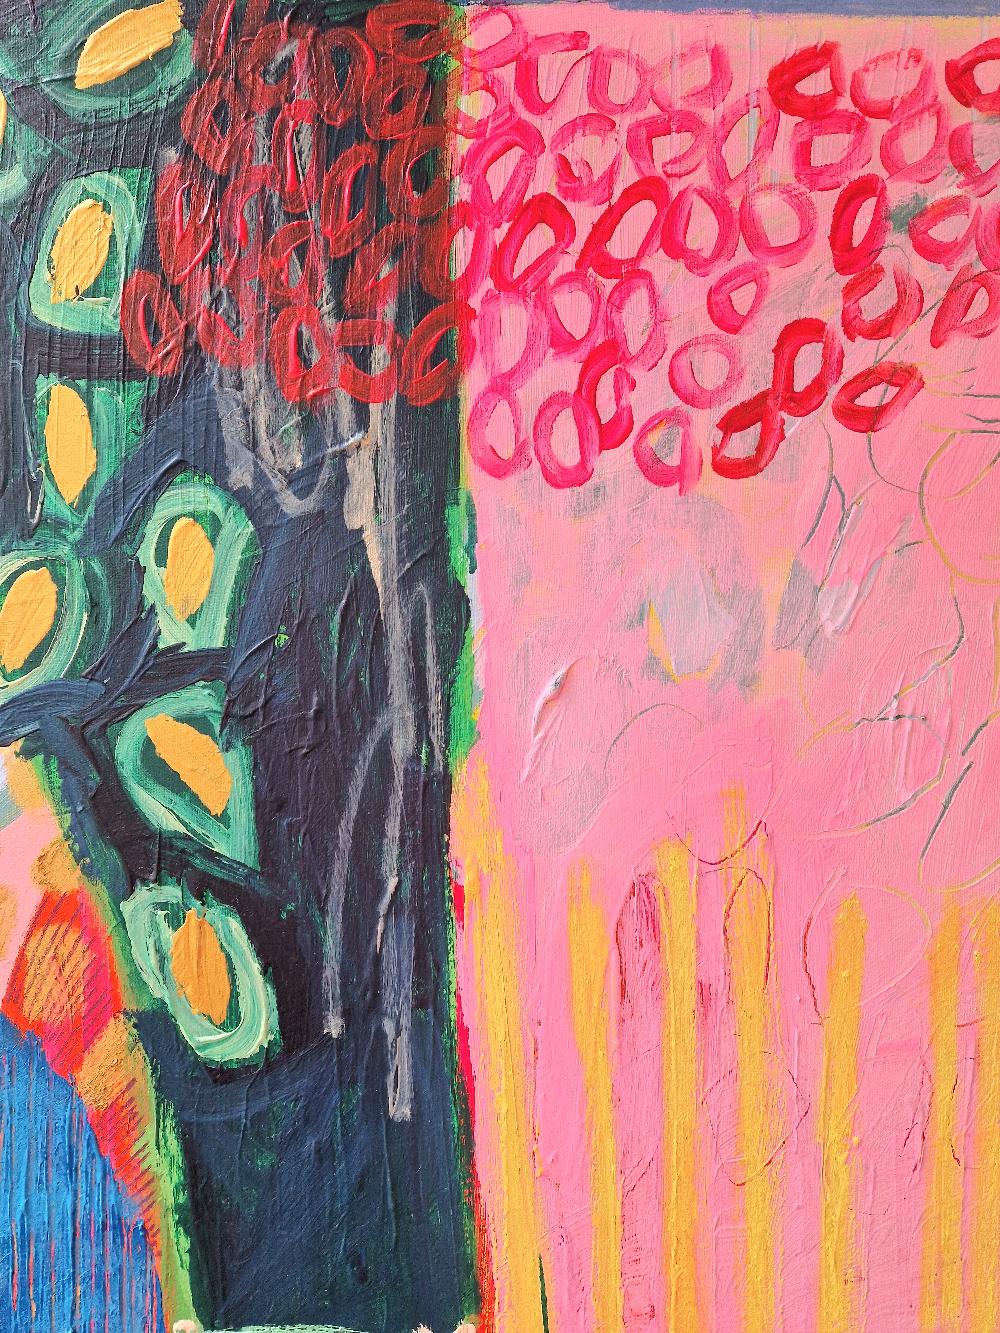 Pièce abstraite originale explorant le langage de la peinture et le mélange des couleurs, pour évoquer l'émotion chez le spectateur. Peinte dans son studio situé dans le jardin de Bristol, Jessie est une peintre abstraite instinctive, qui utilise la